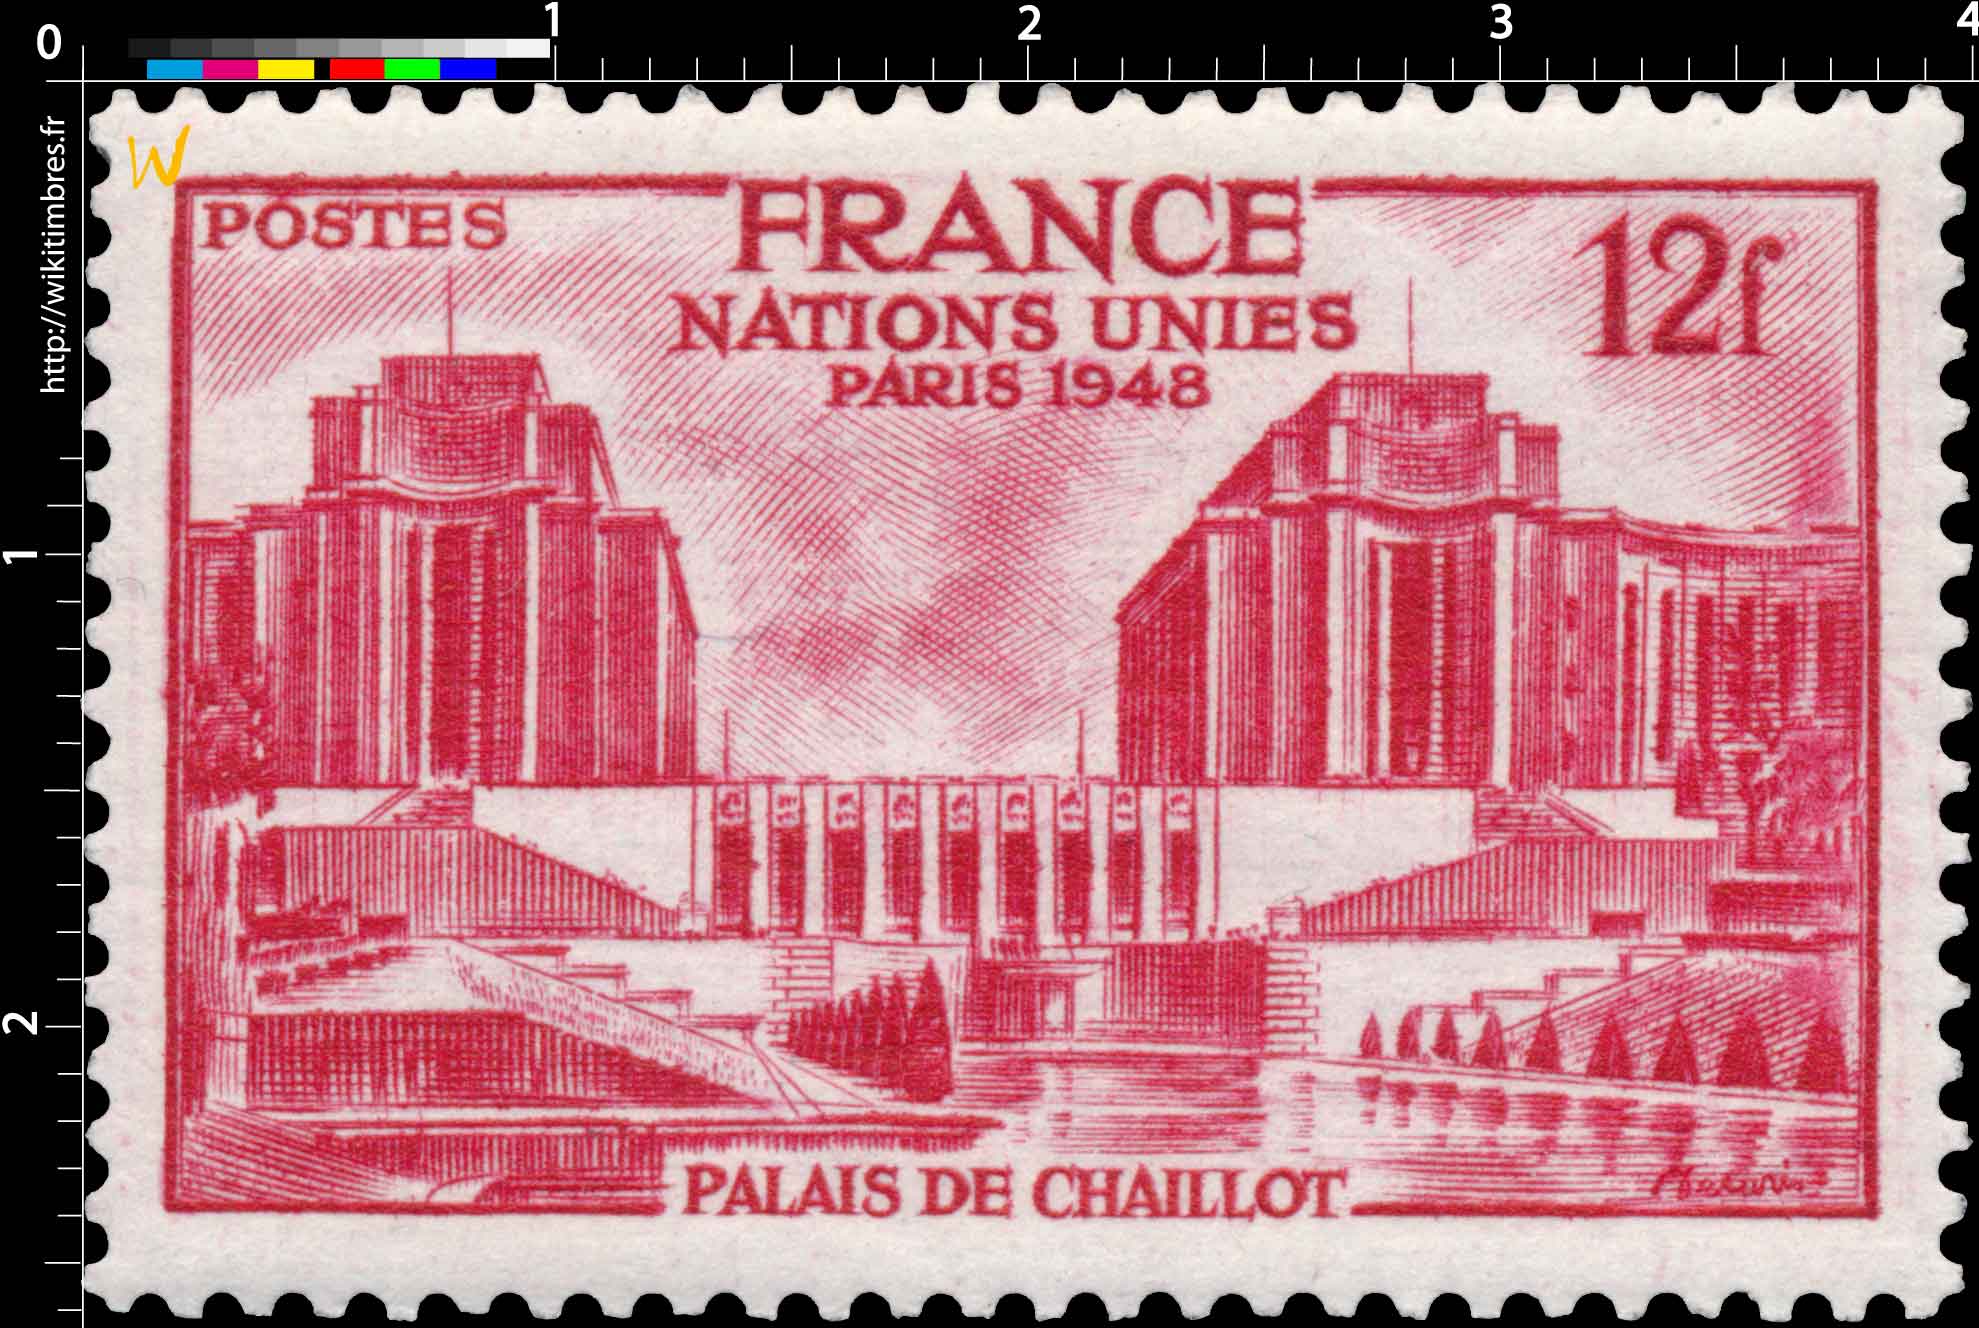 1948 NATIONS UNIES PARIS 1948 PALAIS DE CHAILLOT